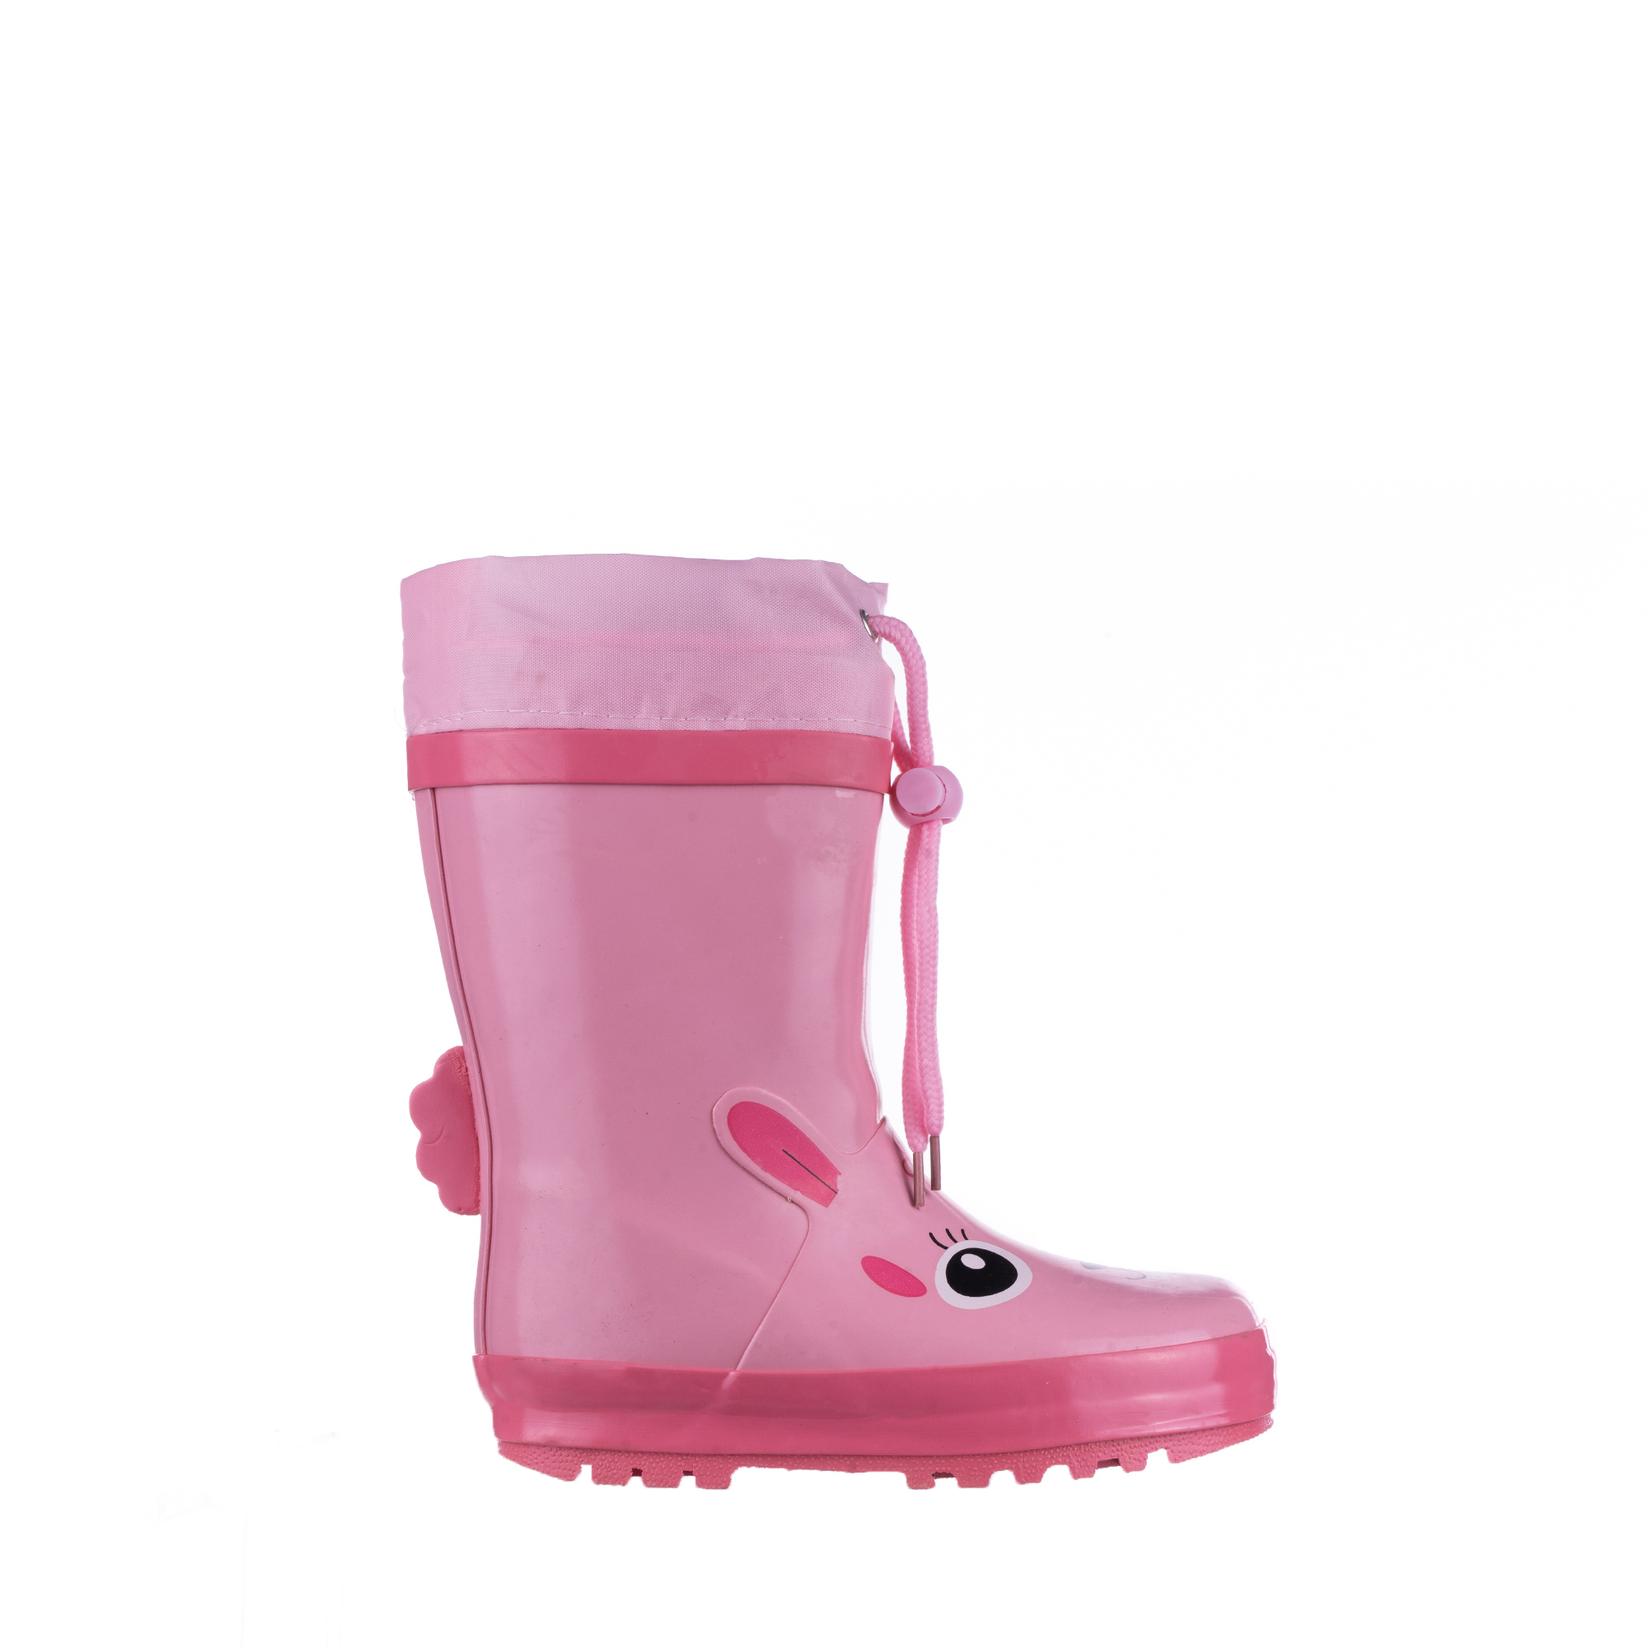 Selected image for PANDINO GIRL Gumene čizme za devojčice N75379, Roze